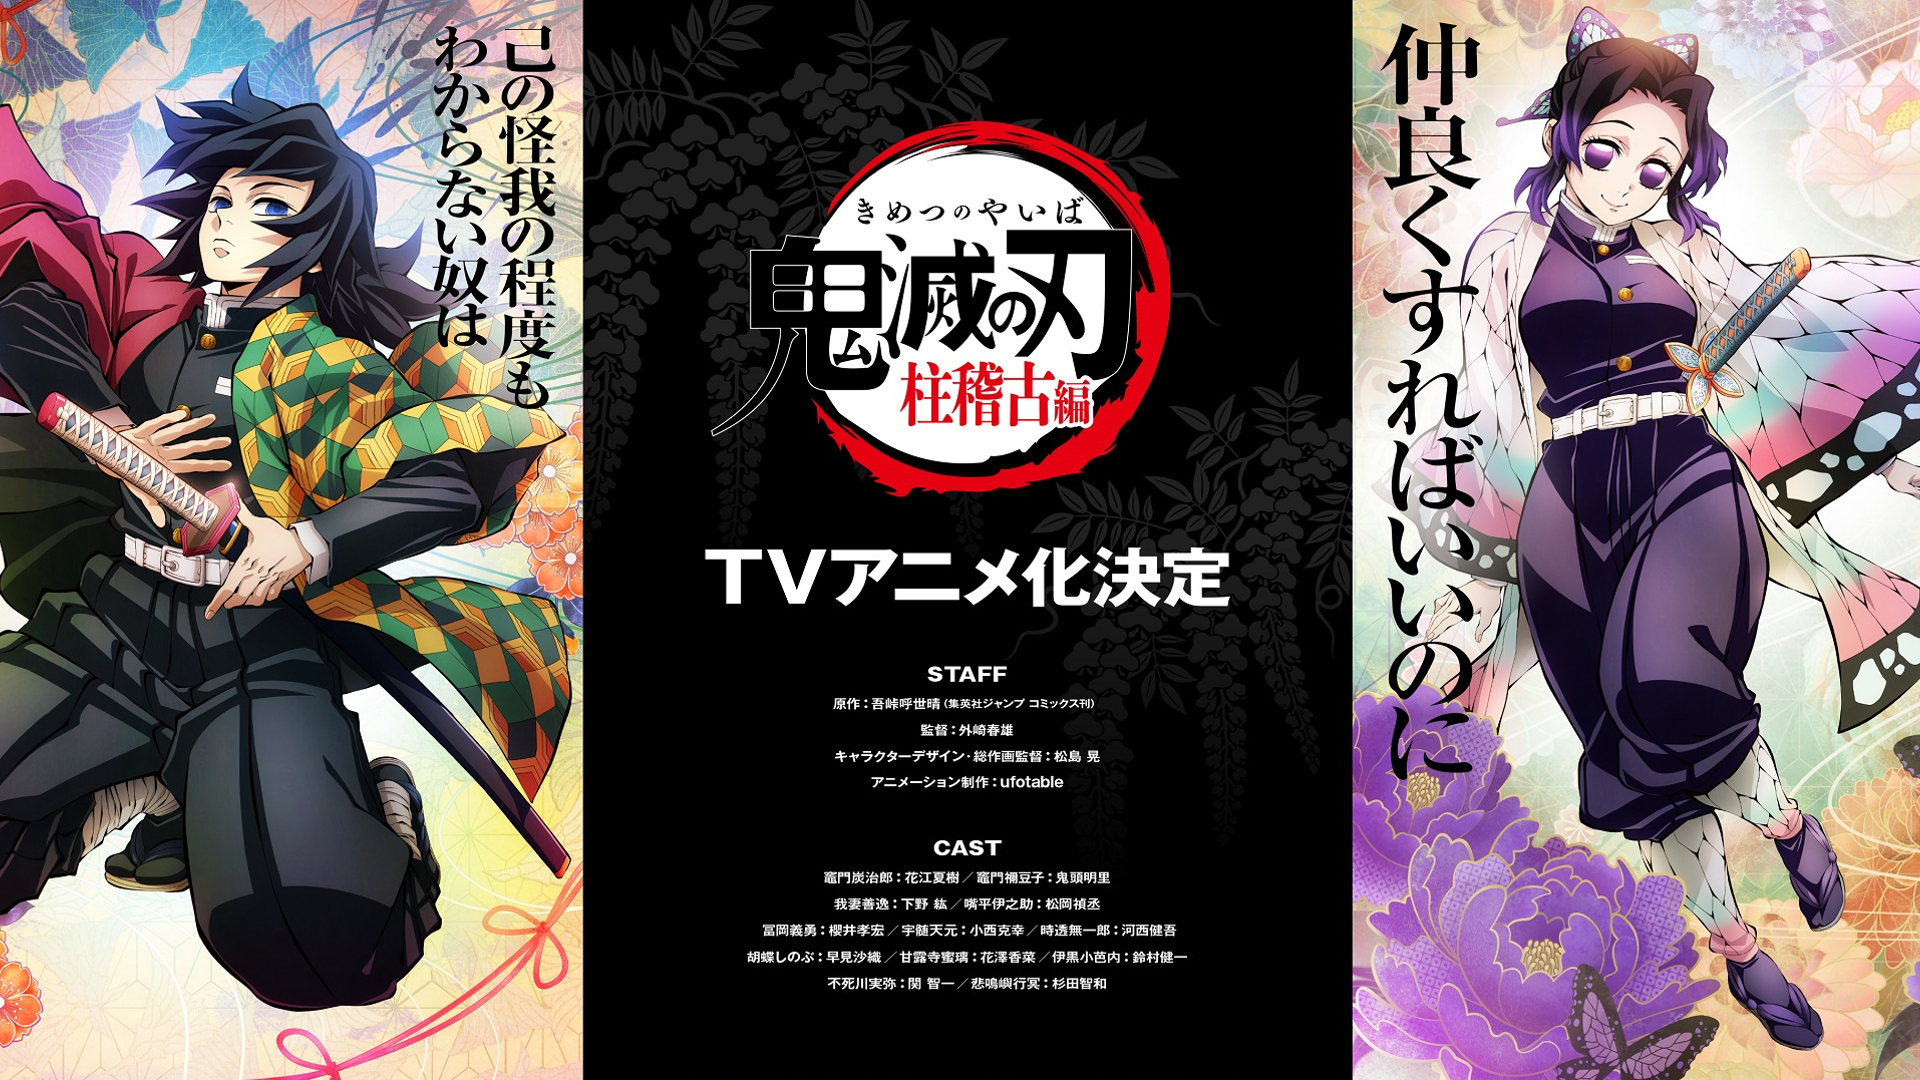 Demon Slayer: Kimetsu No Yaiba Hashira Training Arc Anime Official